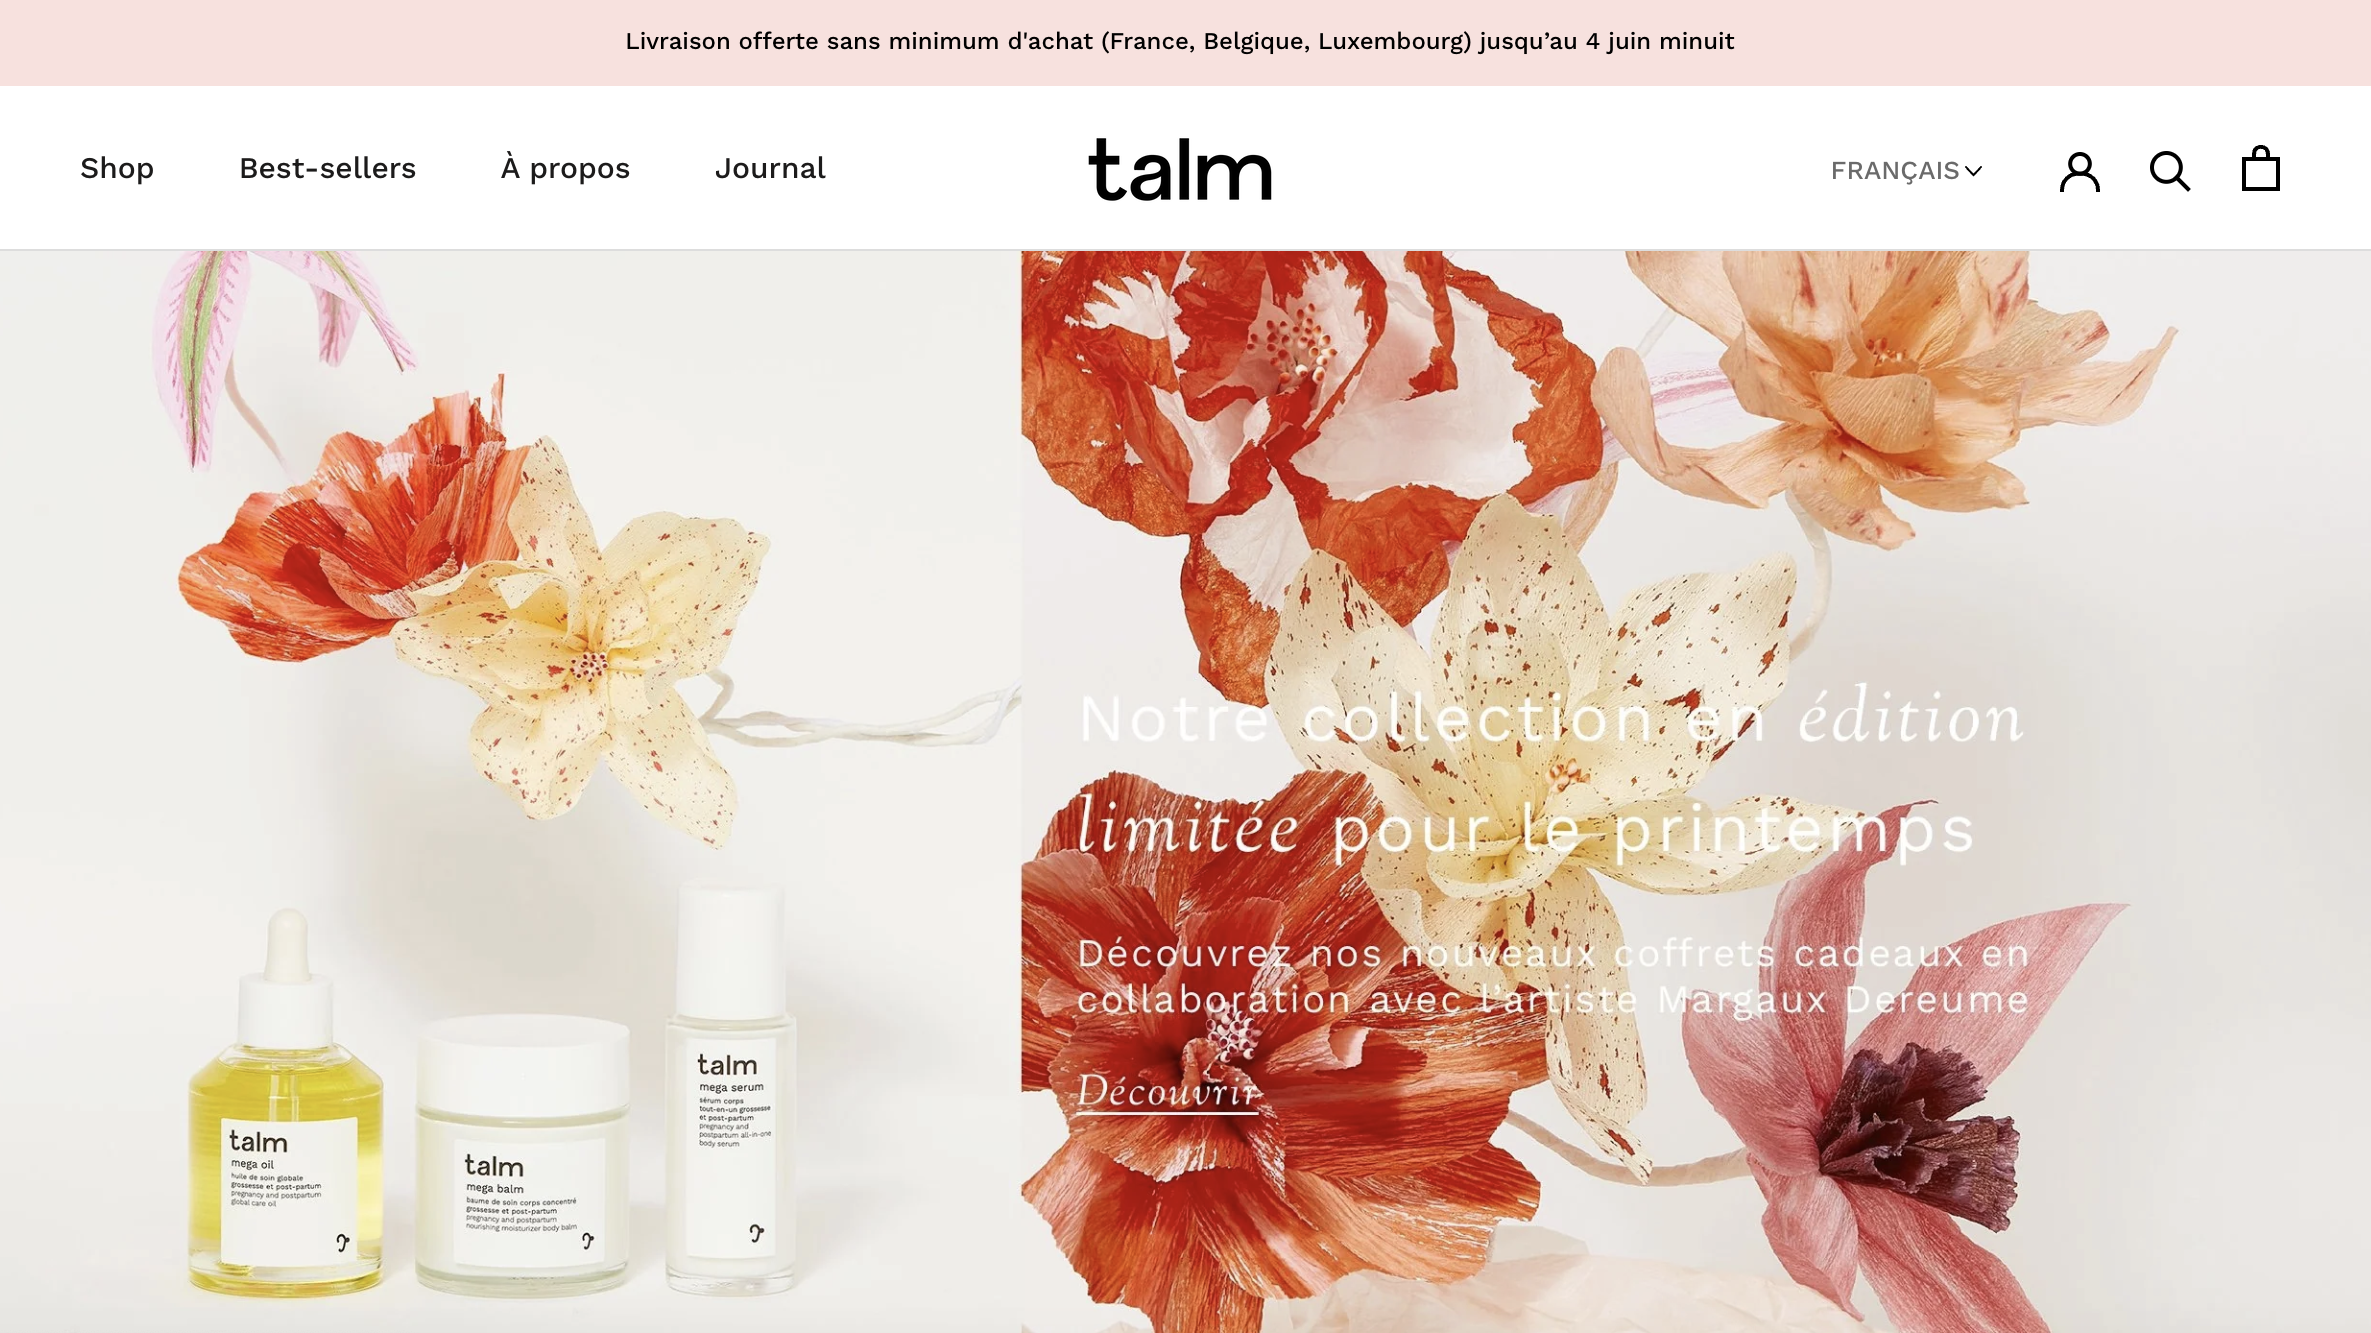 法国天然母婴护肤品牌 talm 获欧缇丽创始人夫妇少数股权投资